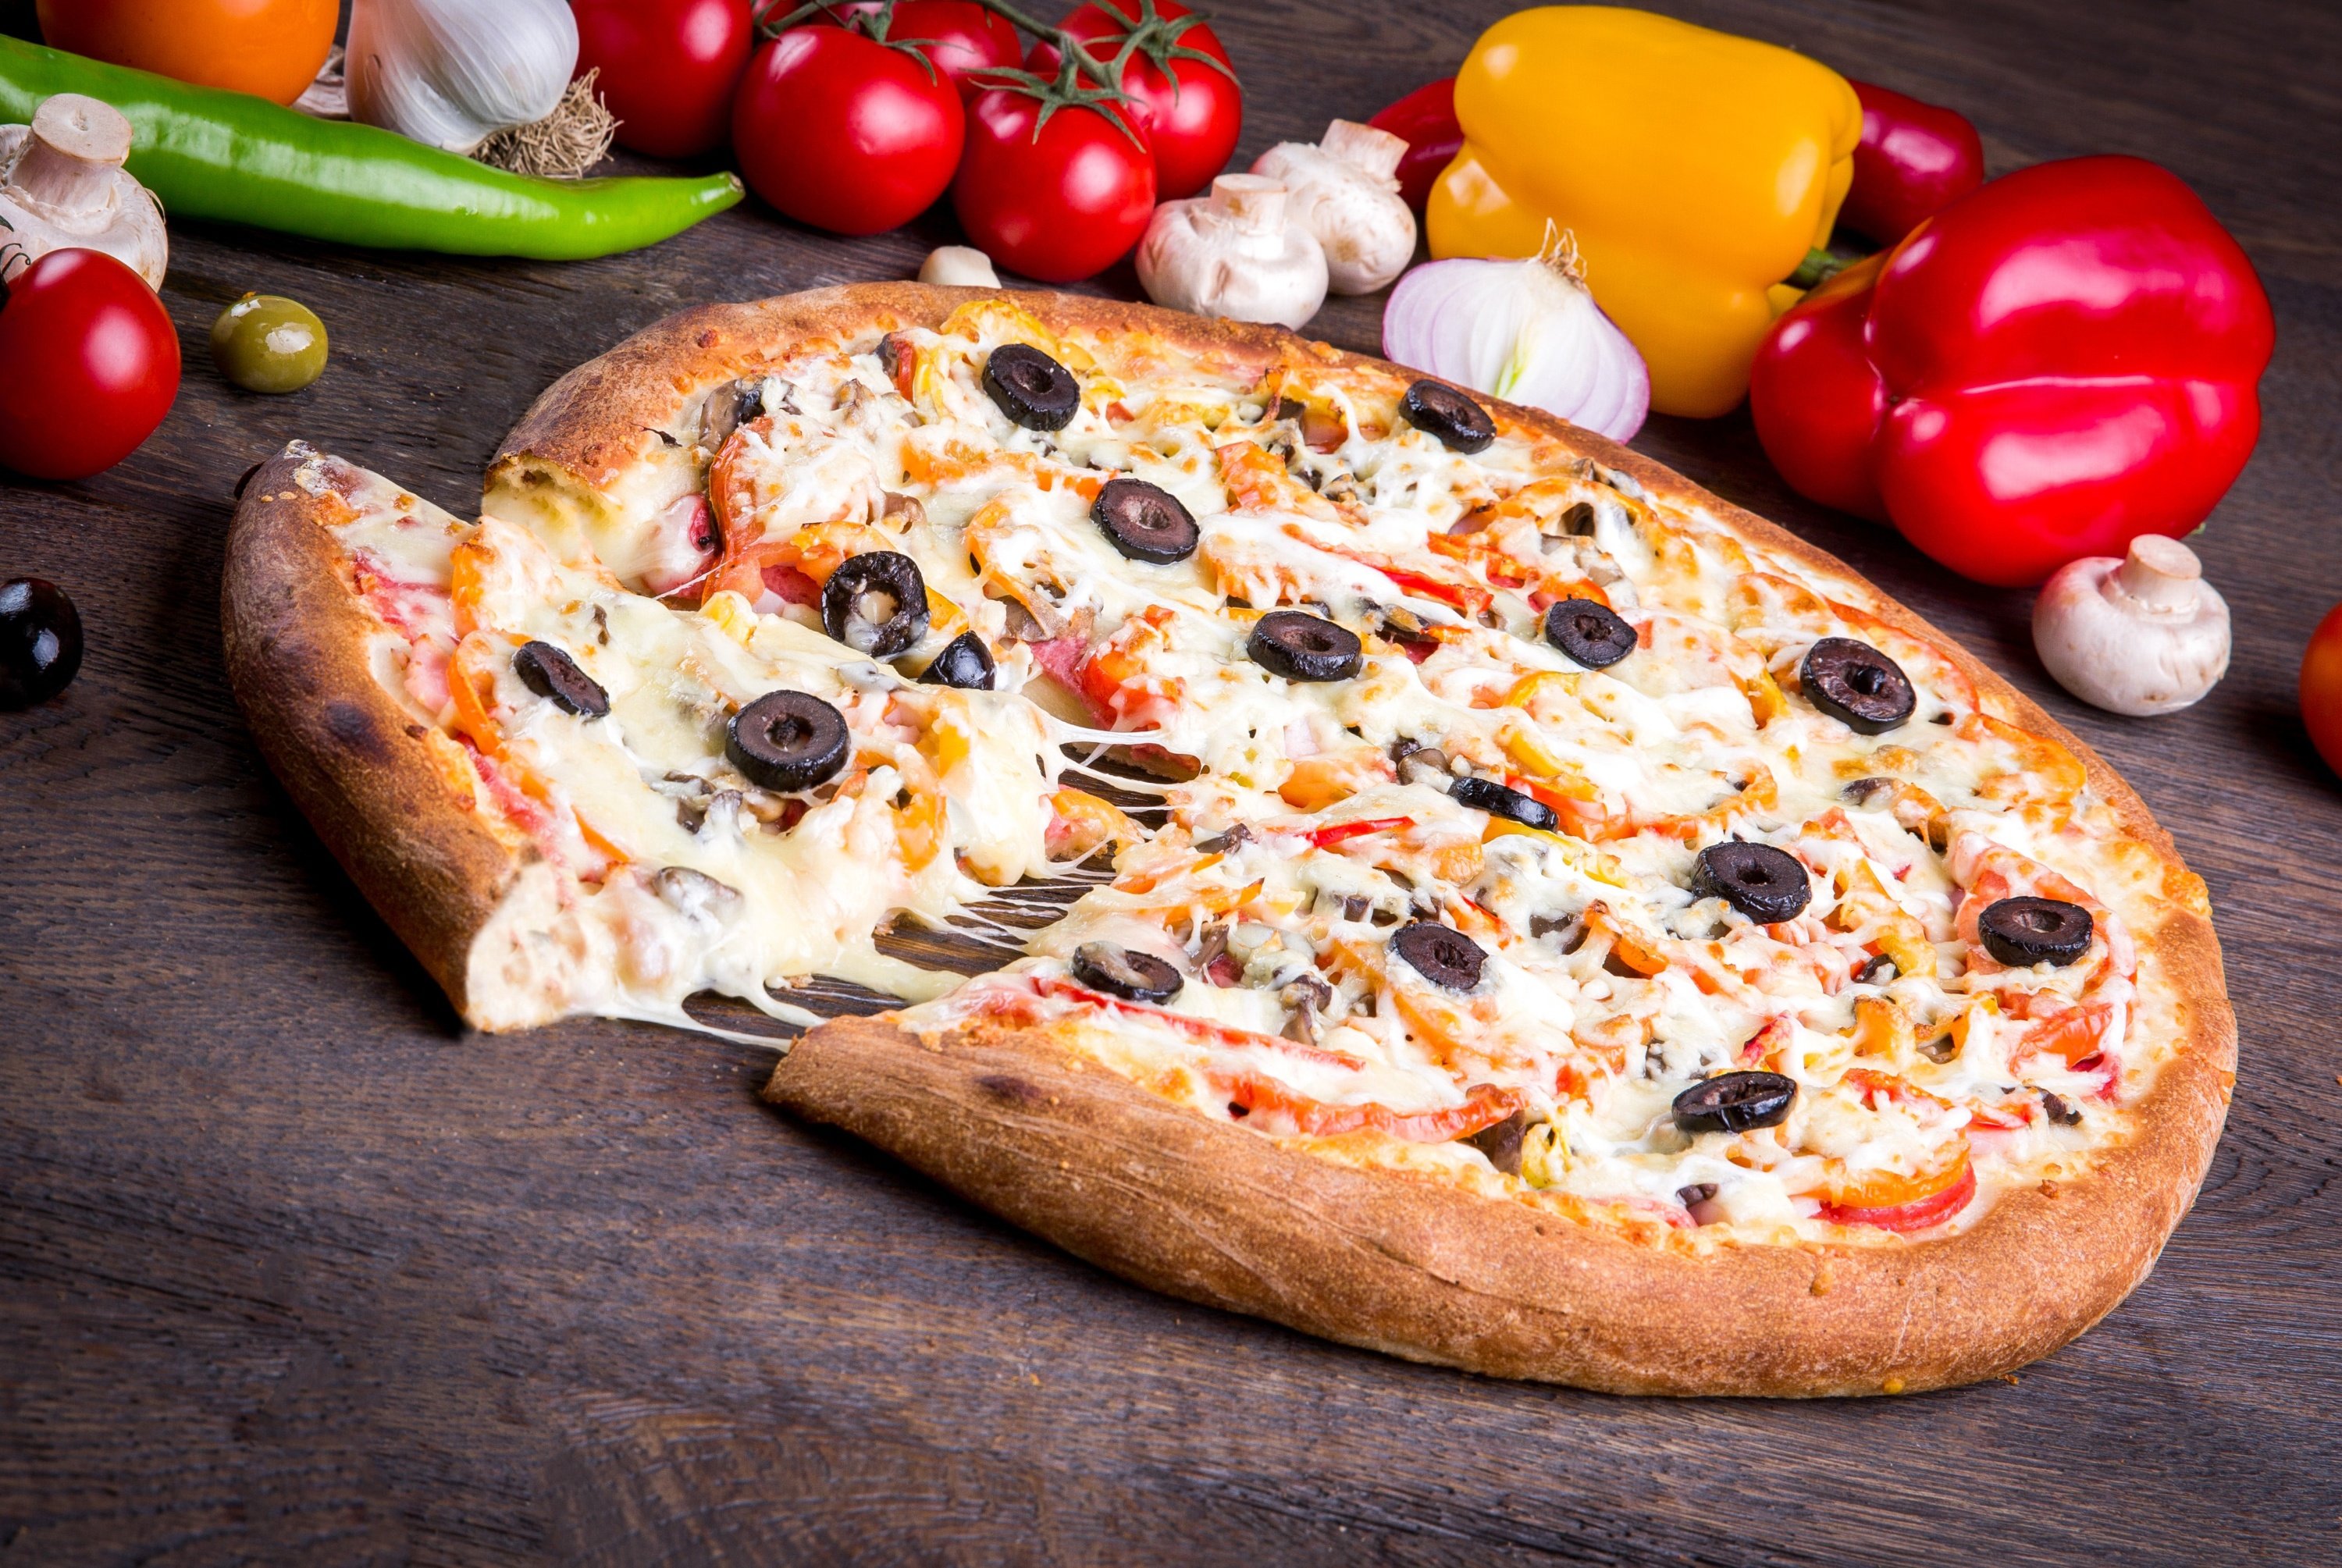 Вся еда а4. "Пицца". Красивая пицца. Итальянская пицца. Пицца с маслинами.